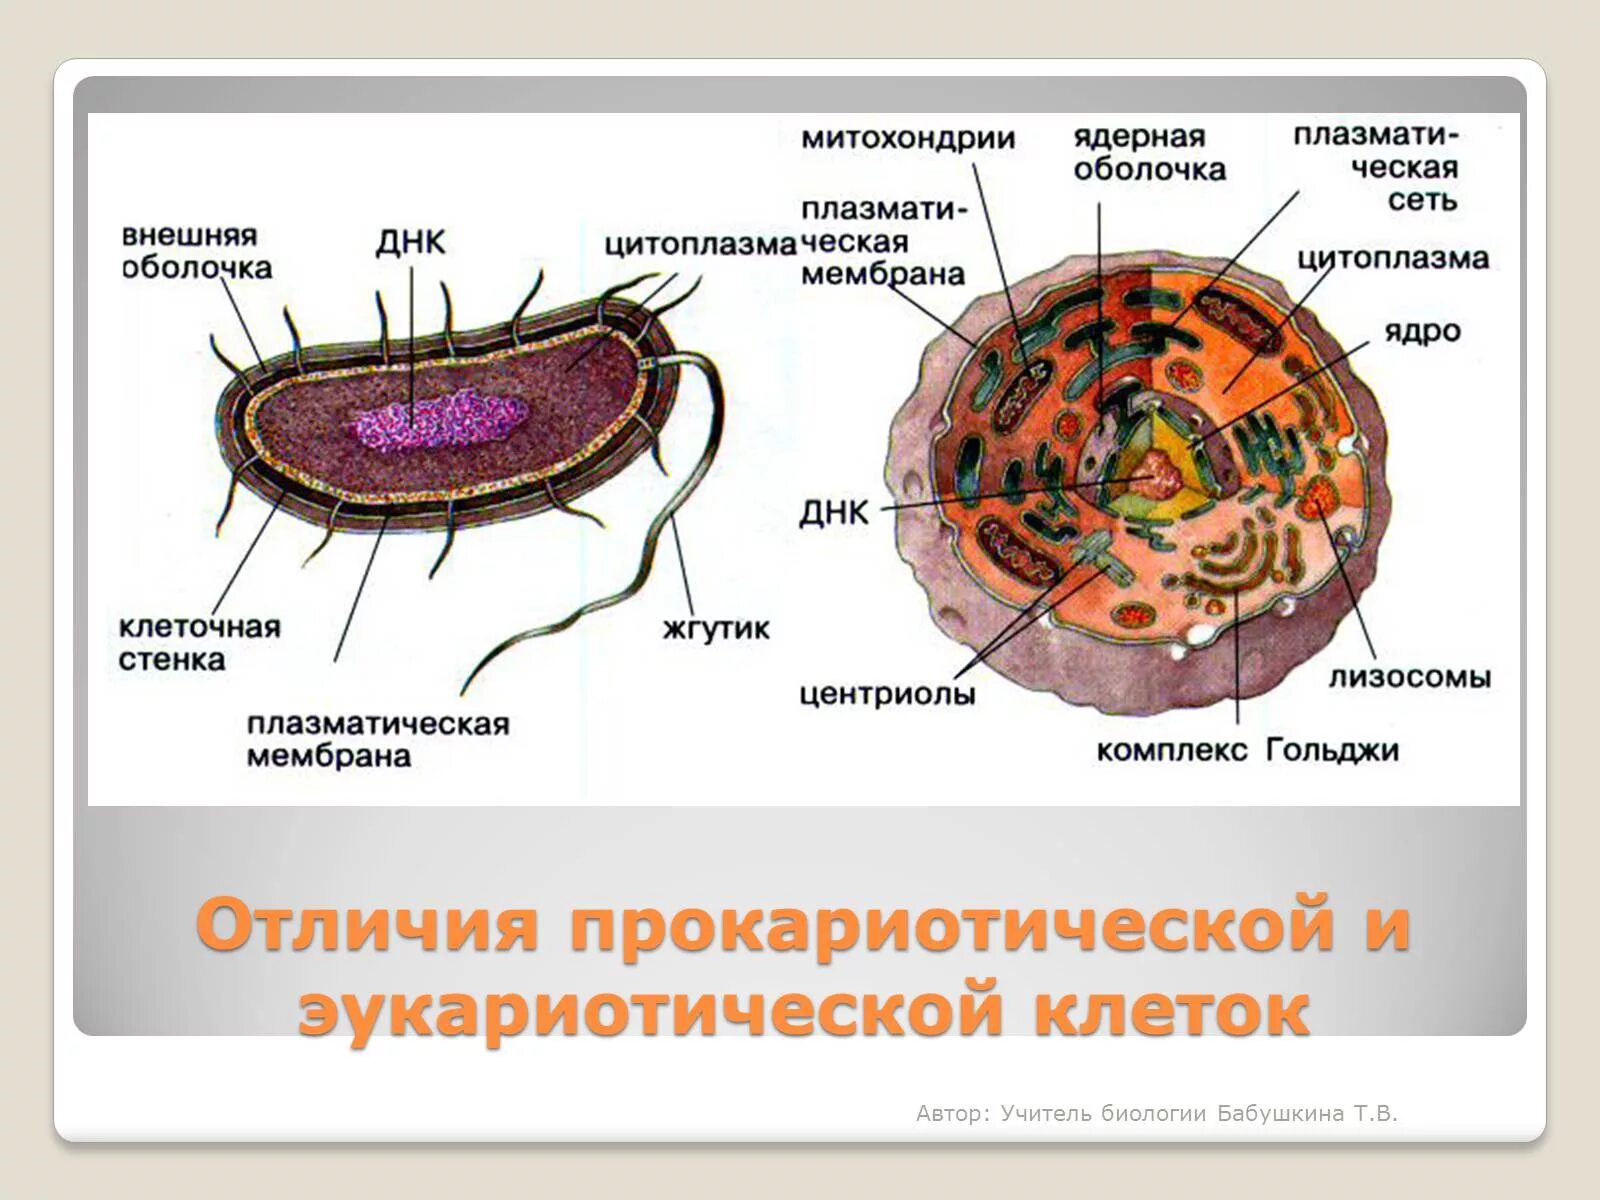 Лизосомы прокариотической клетки. Строение бактерии прокариот. Строение бактериальной клетки прокариот. Прокариотическая клетка bacteria. Строение клетки прокариот бактерии.